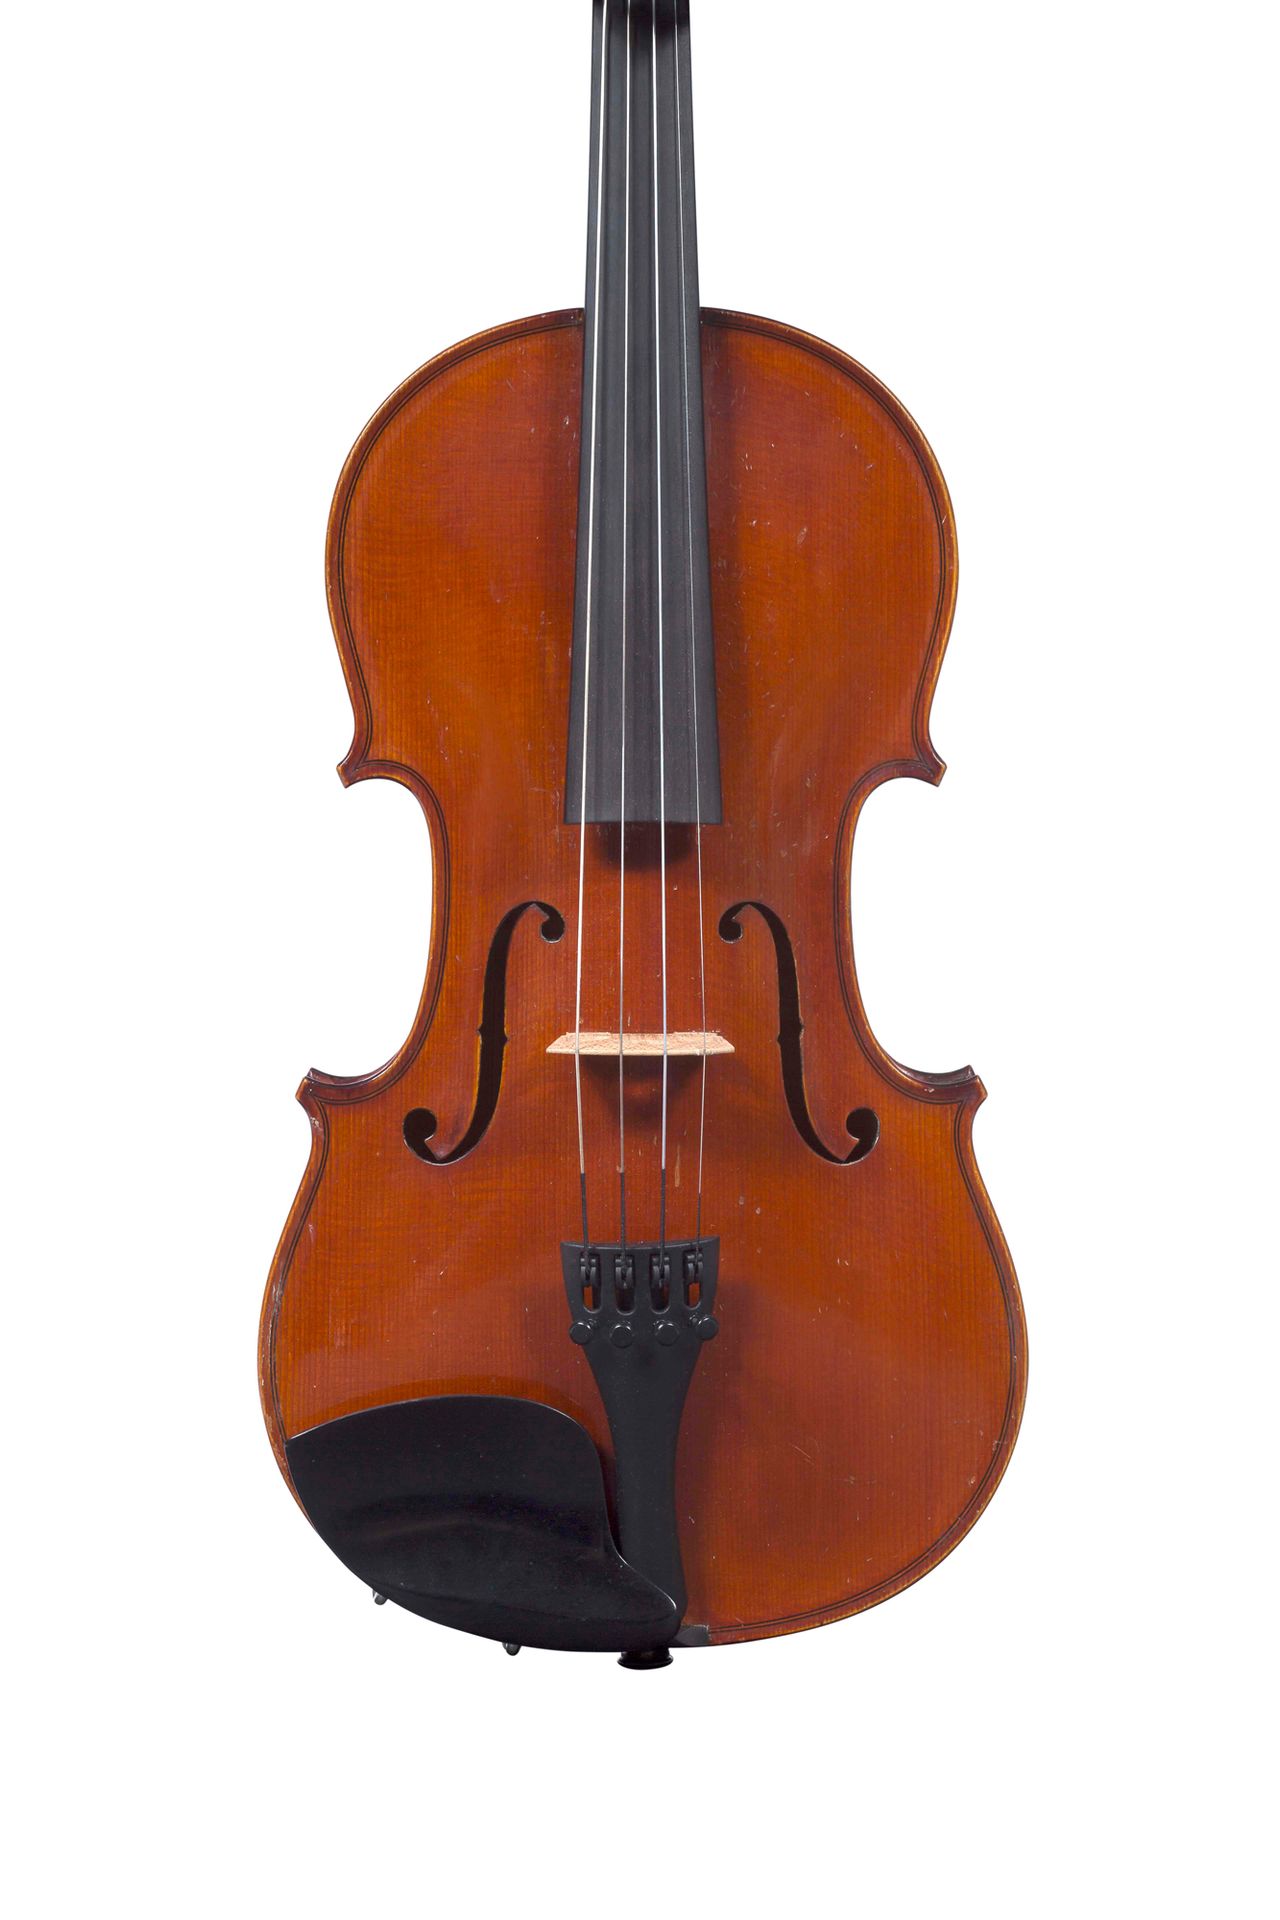 Null Violine von Auguste Delivet.
Hergestellt in Paris 1905, Nummer 145.
Modell &hellip;